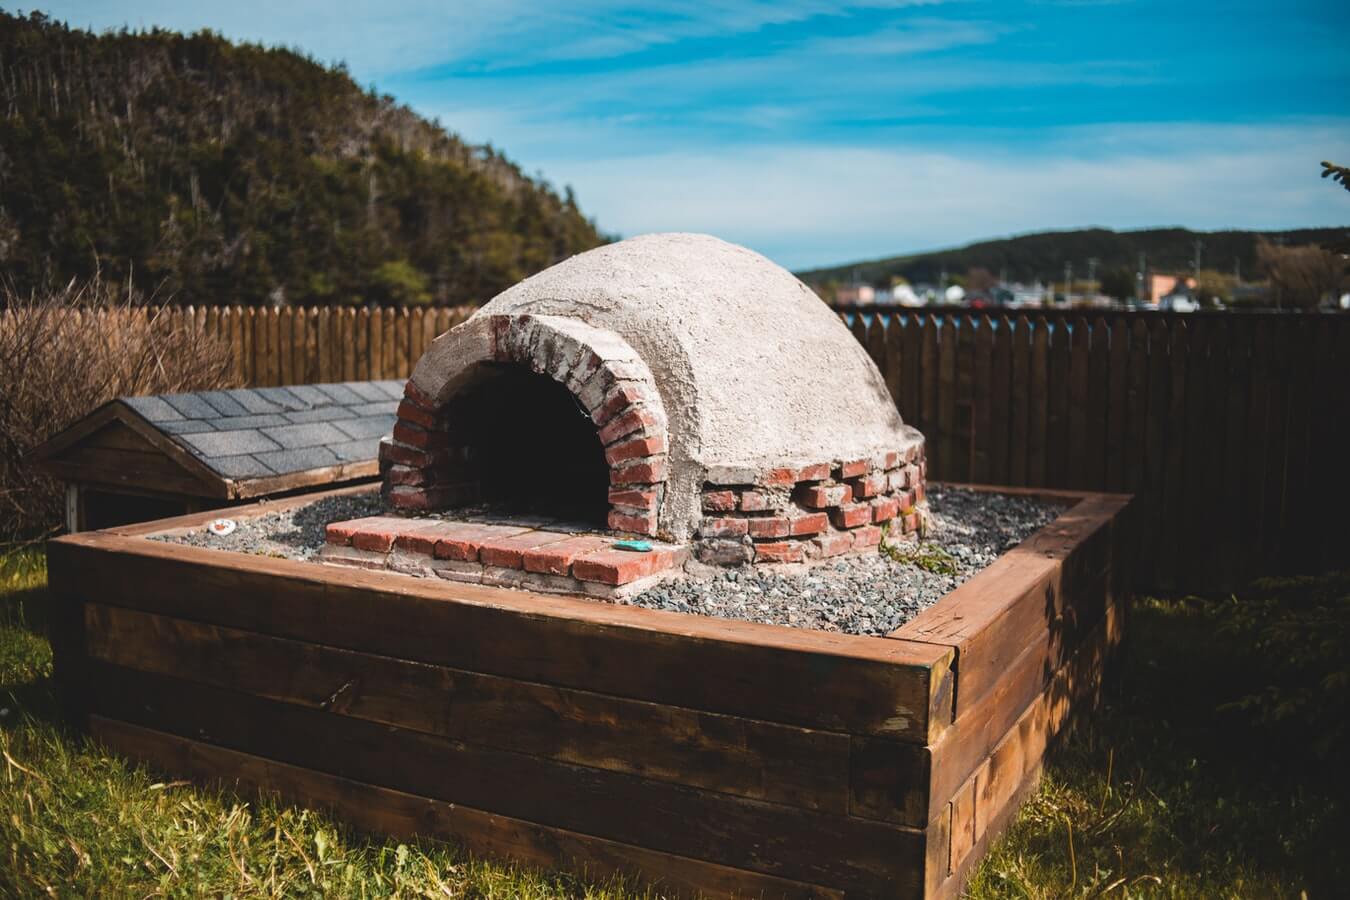 Diy Outdoor Pizza Oven How To Build, Outdoor Brick Oven Diy